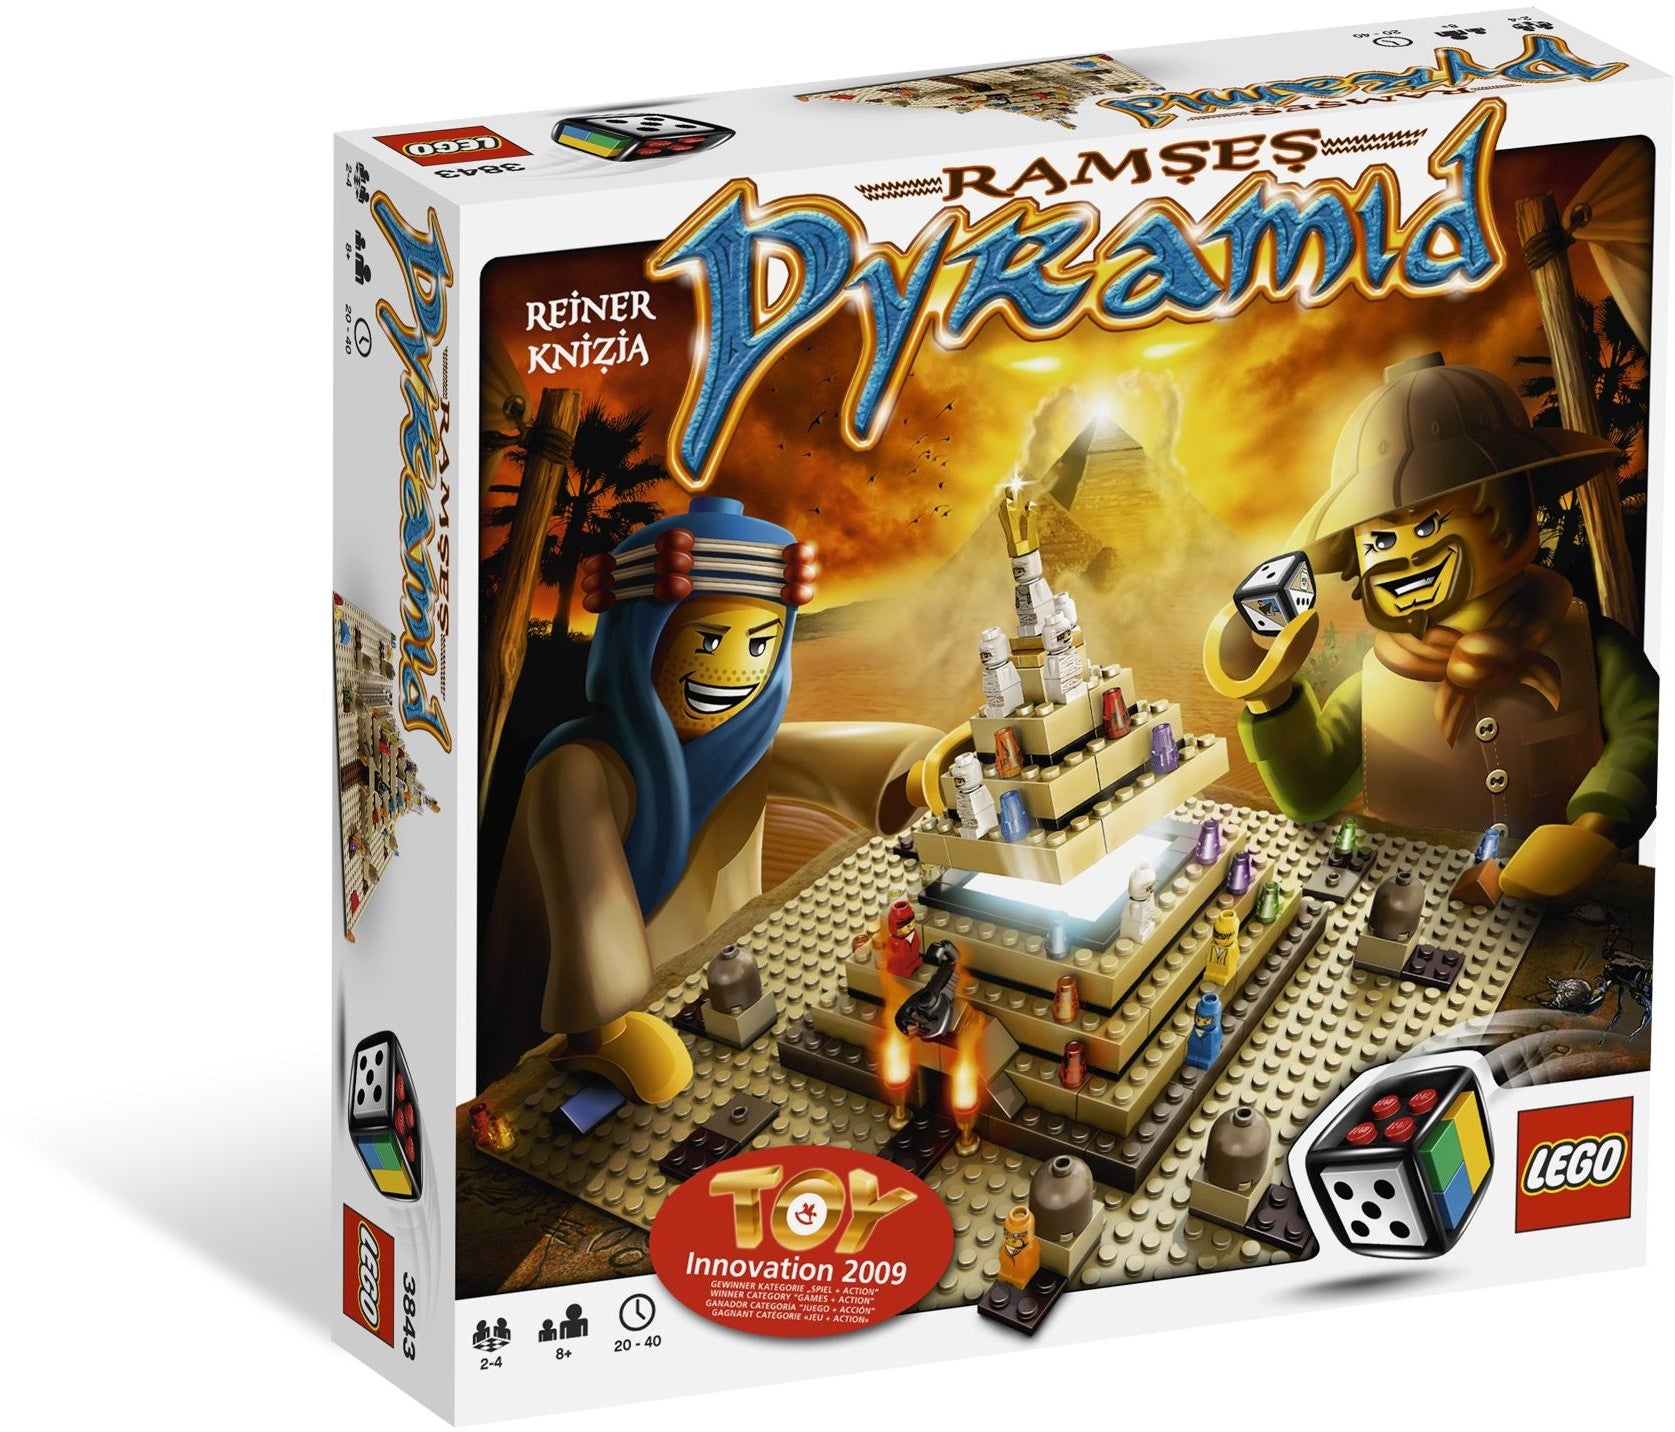 Lego Games 3843 - Ramses Pyramid – Brikkehuset